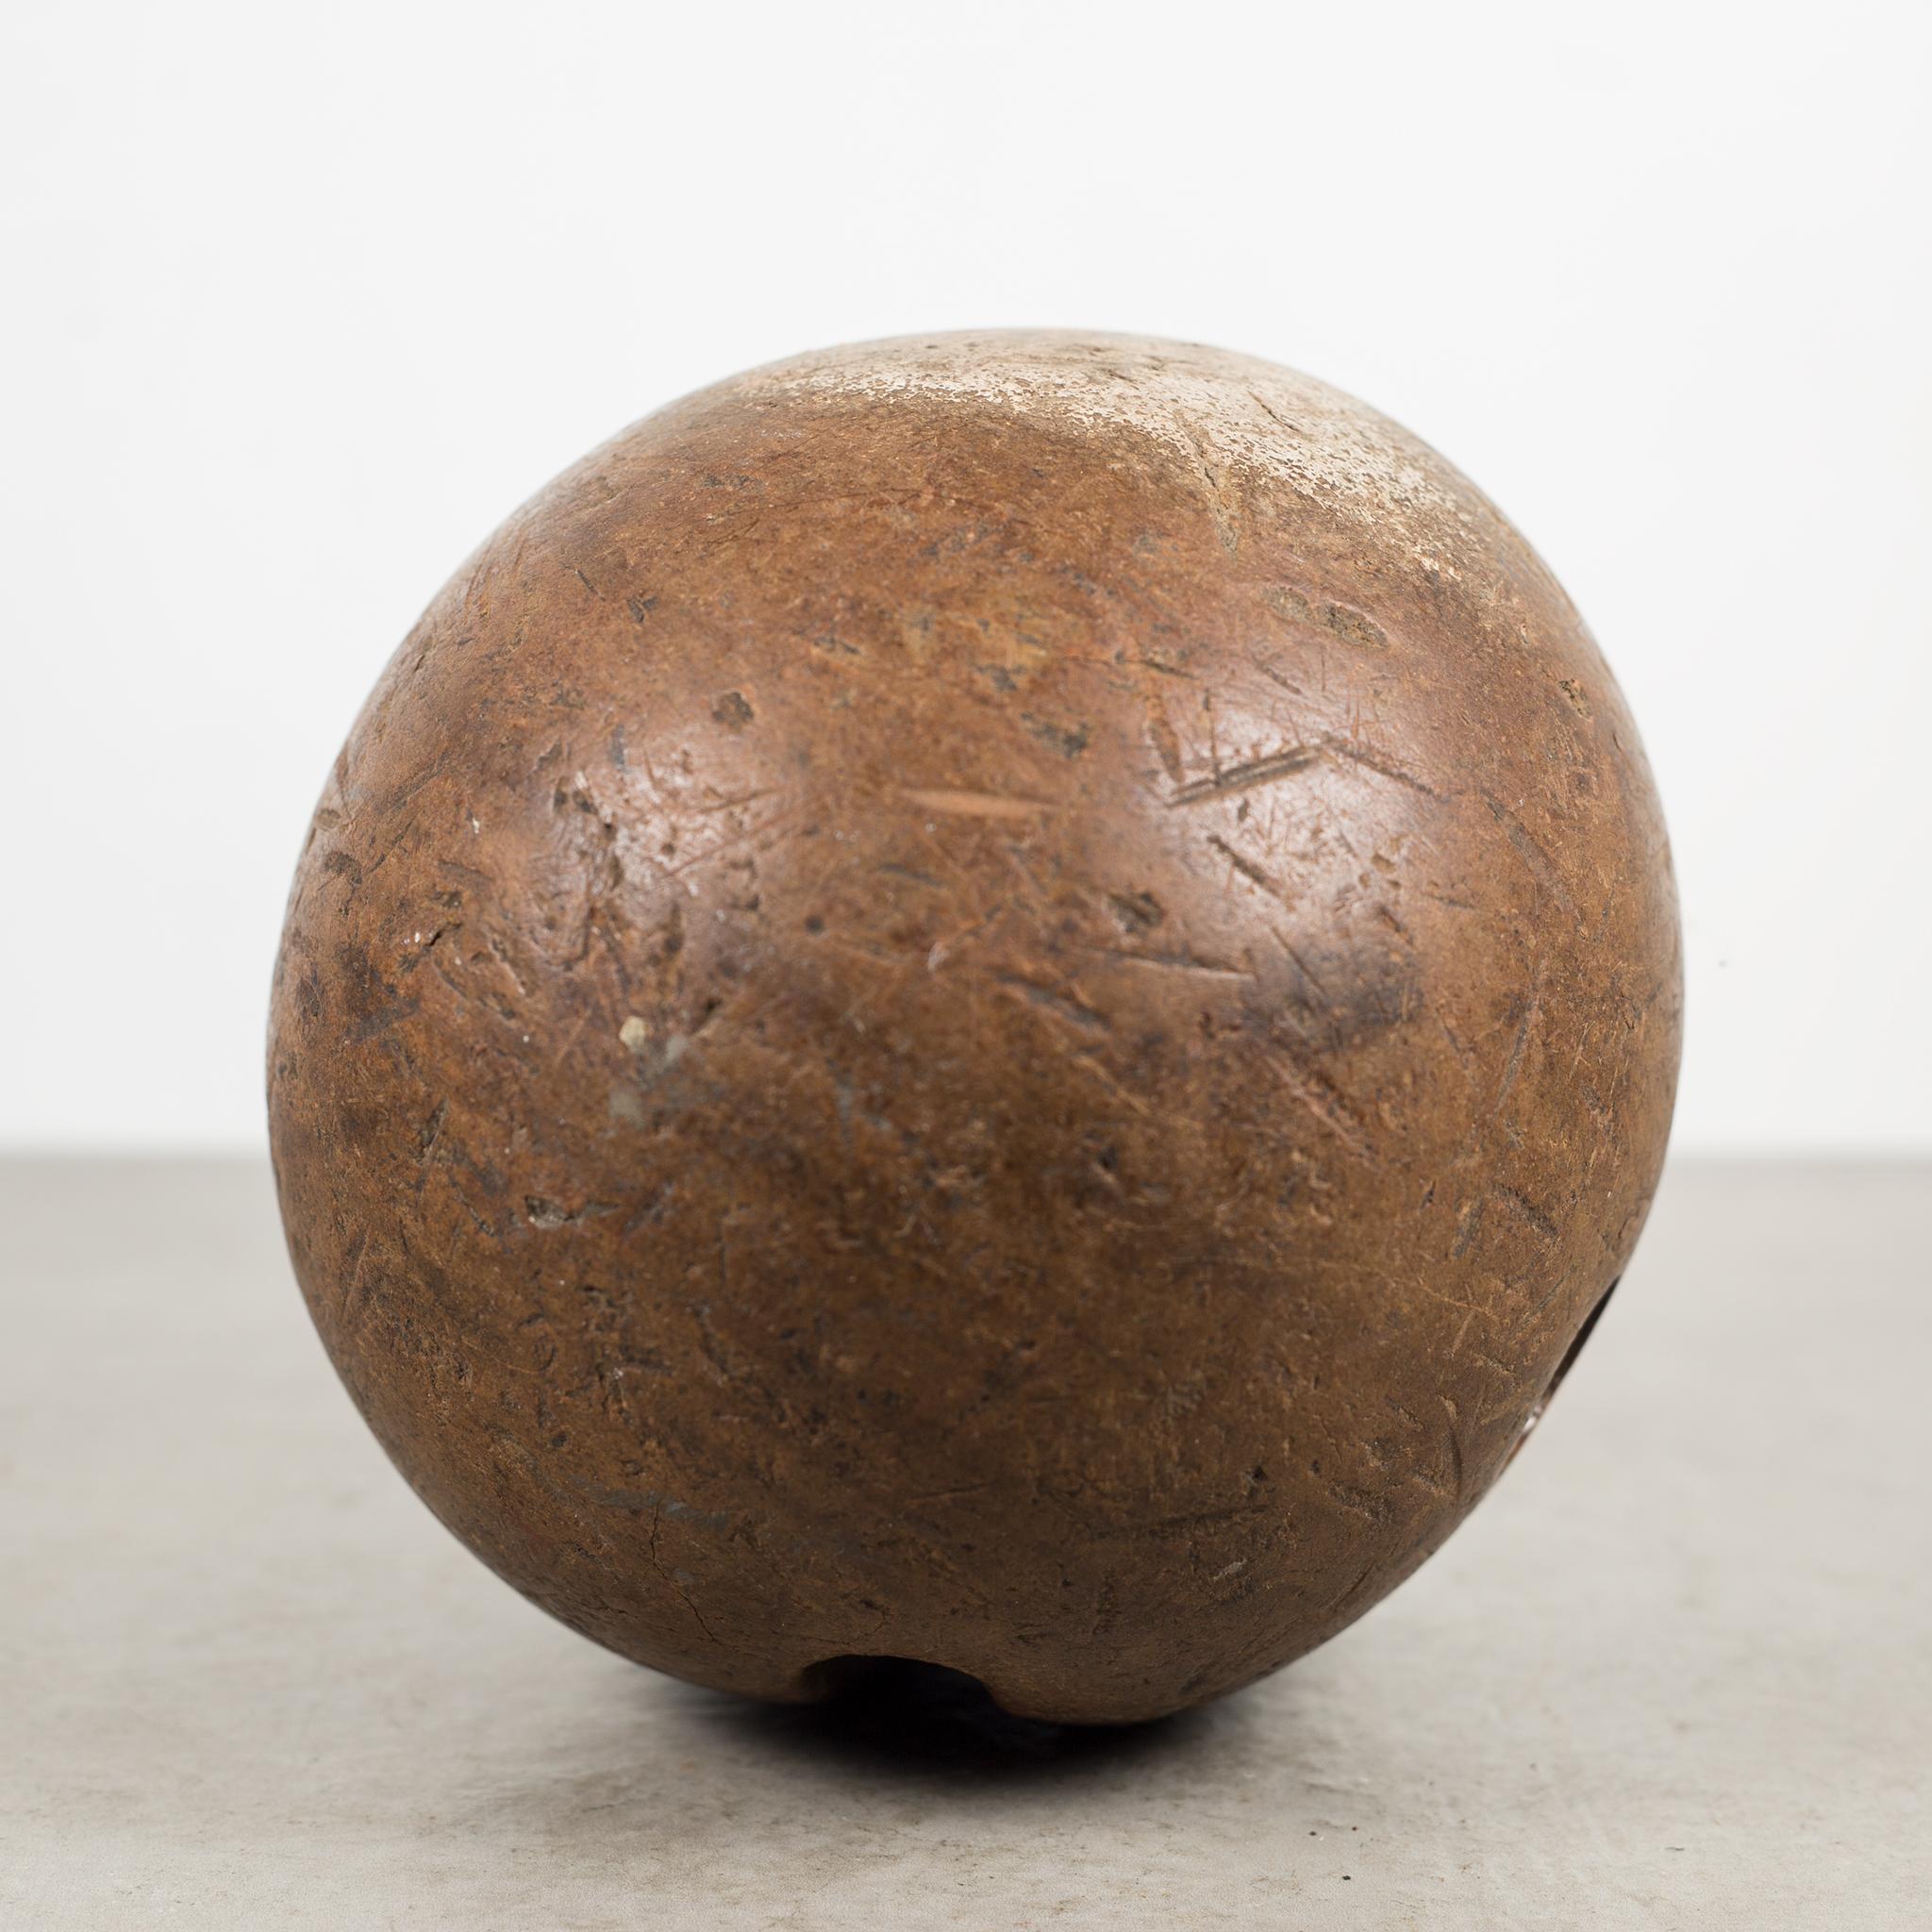 wooden bowling ball